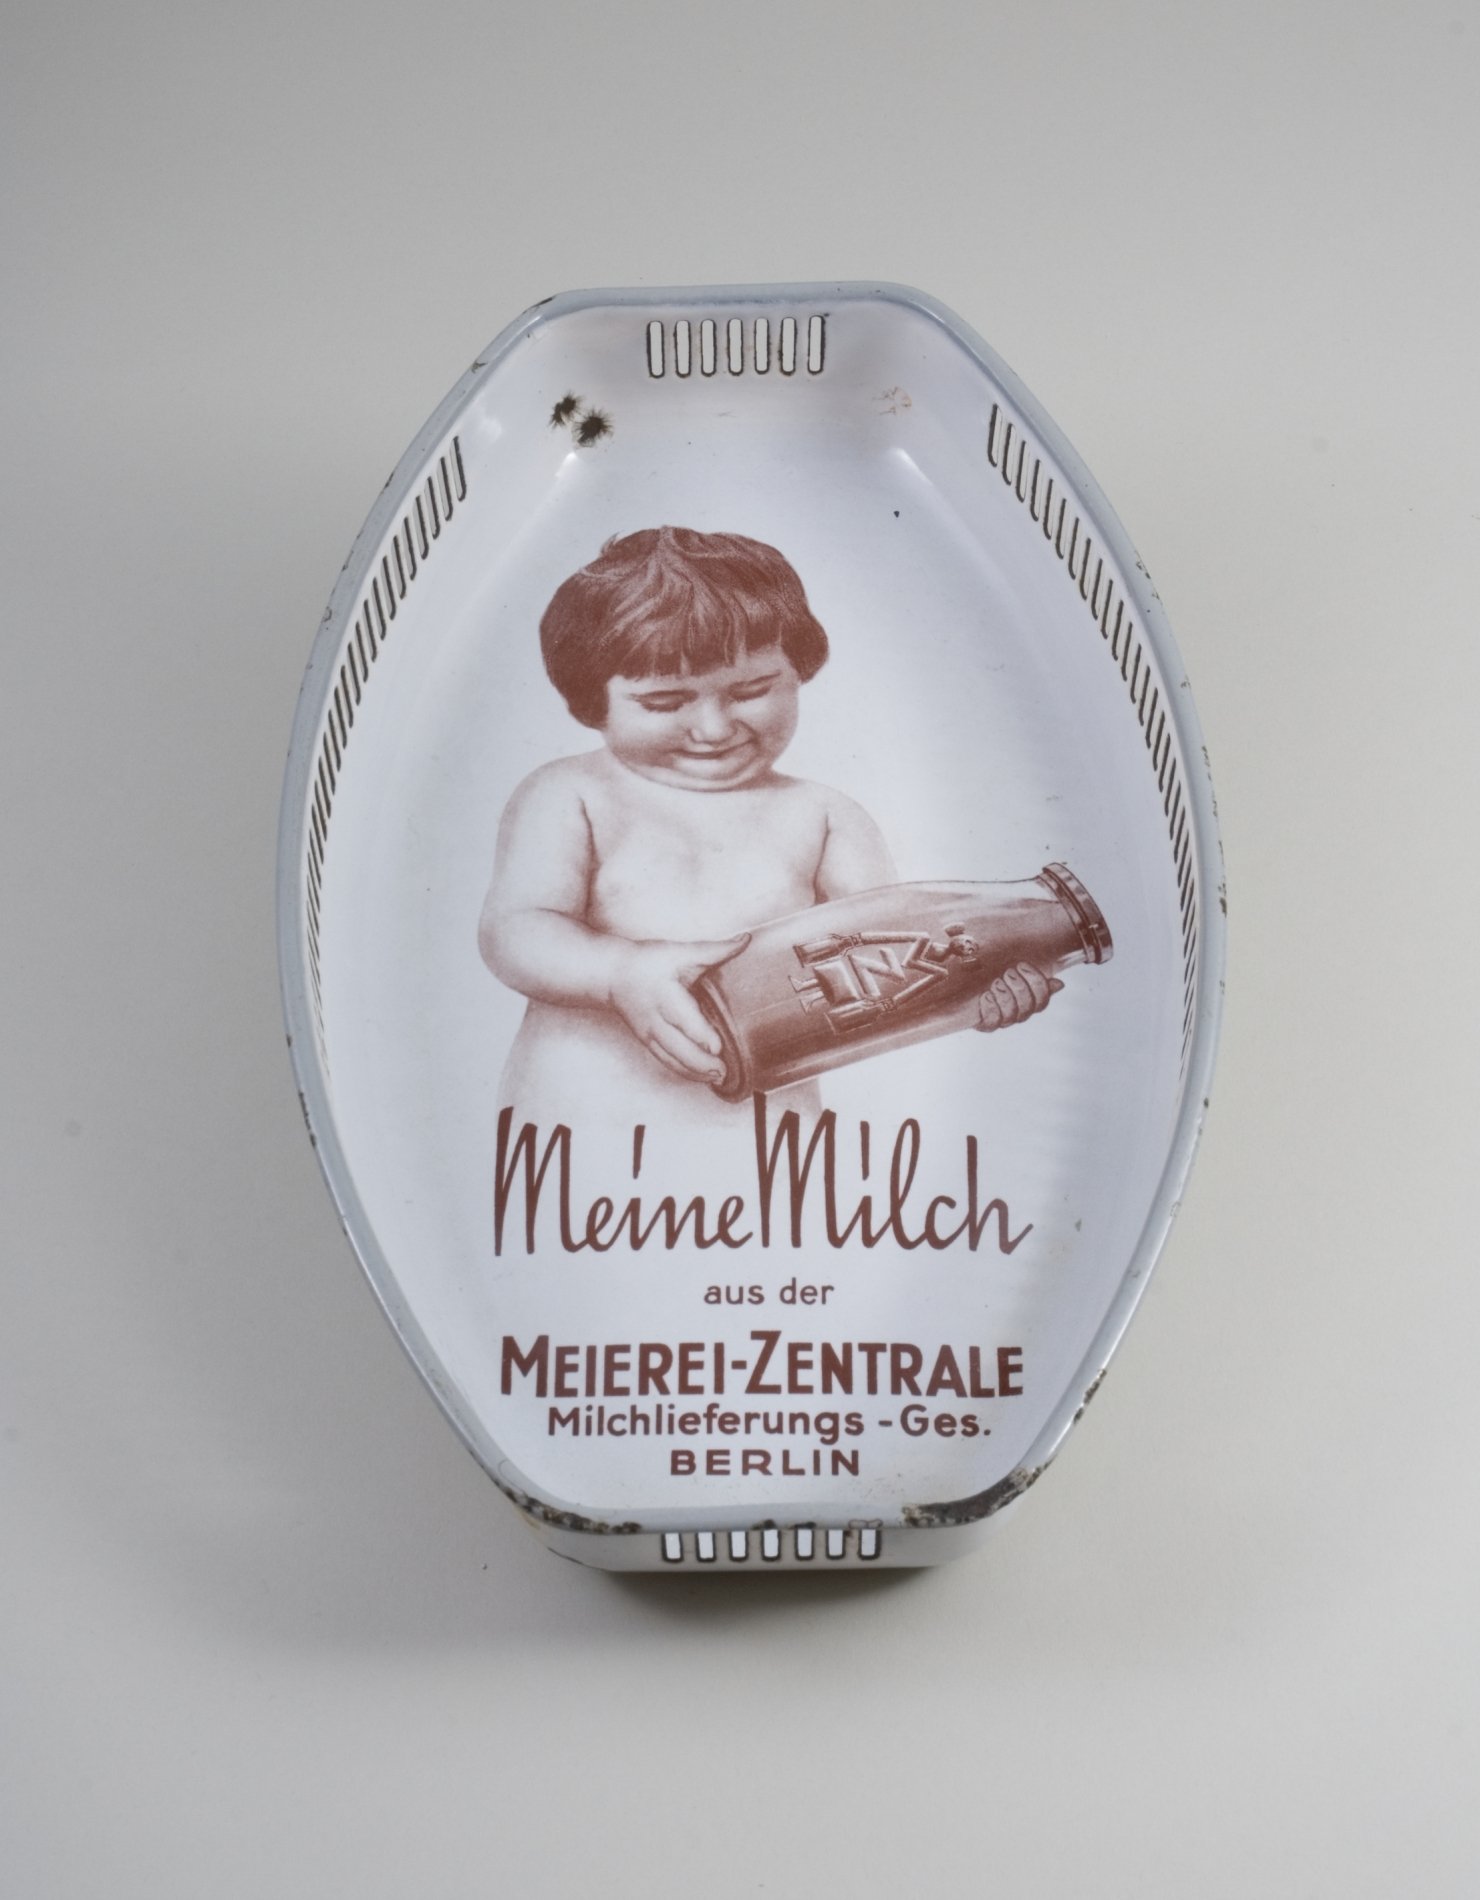 Brotkorb aus emailliertem Metall - "Meine Milch aus der Meierei-Zentrale" (Stiftung Domäne Dahlem - Landgut und Museum, Weiternutzung nur mit Genehmigung des Museums CC BY-NC-SA)